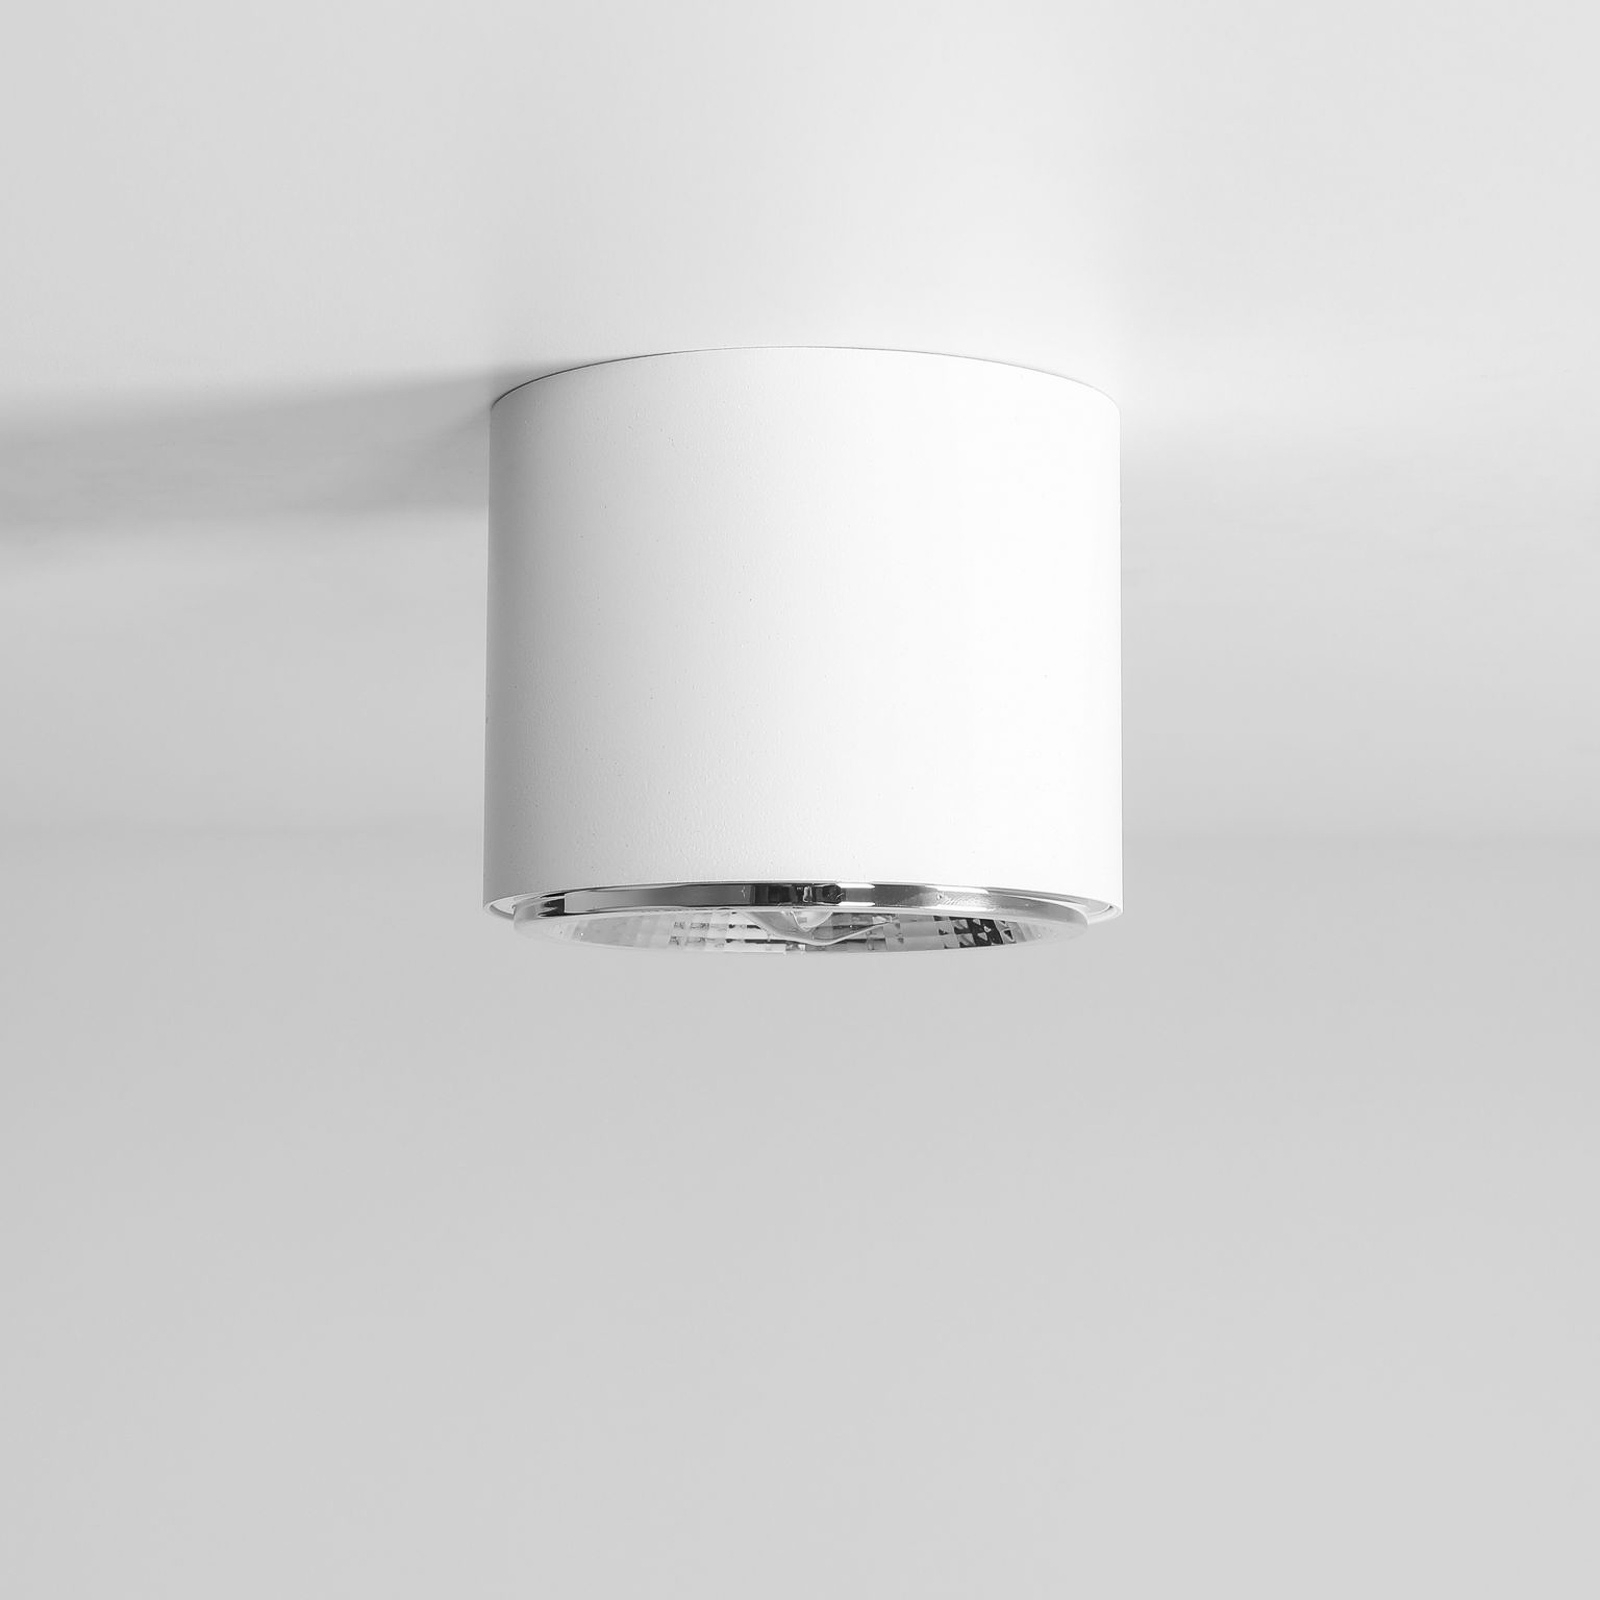 Bot ceiling spotlight, white, one-bulb